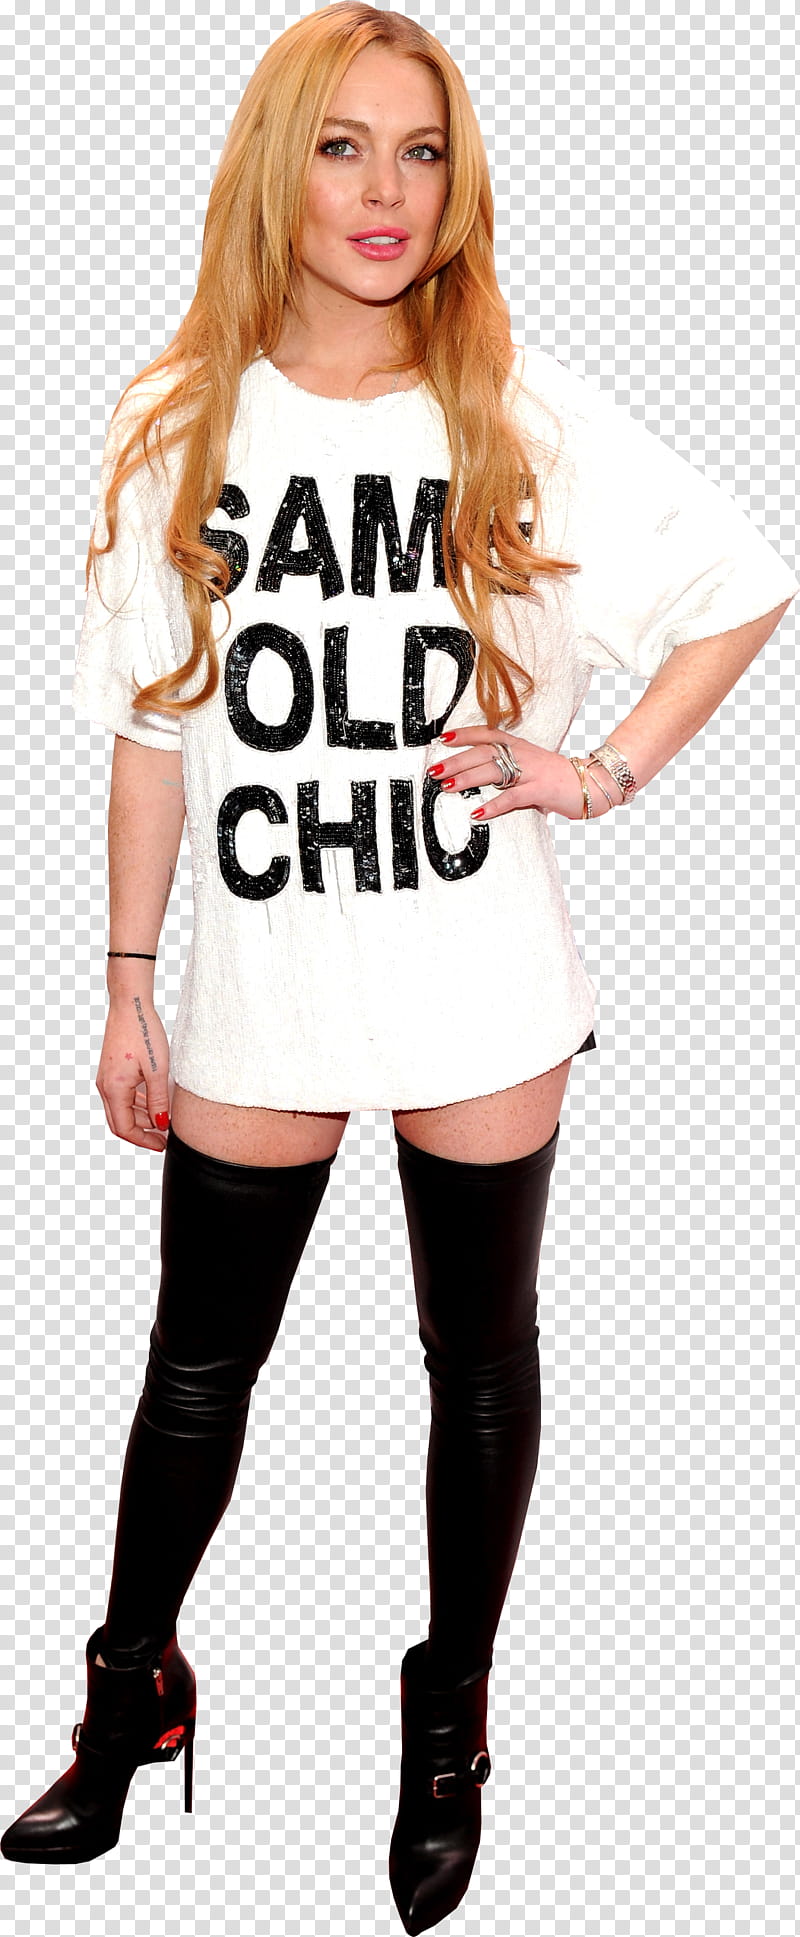 Lindsay Lohan transparent background PNG clipart